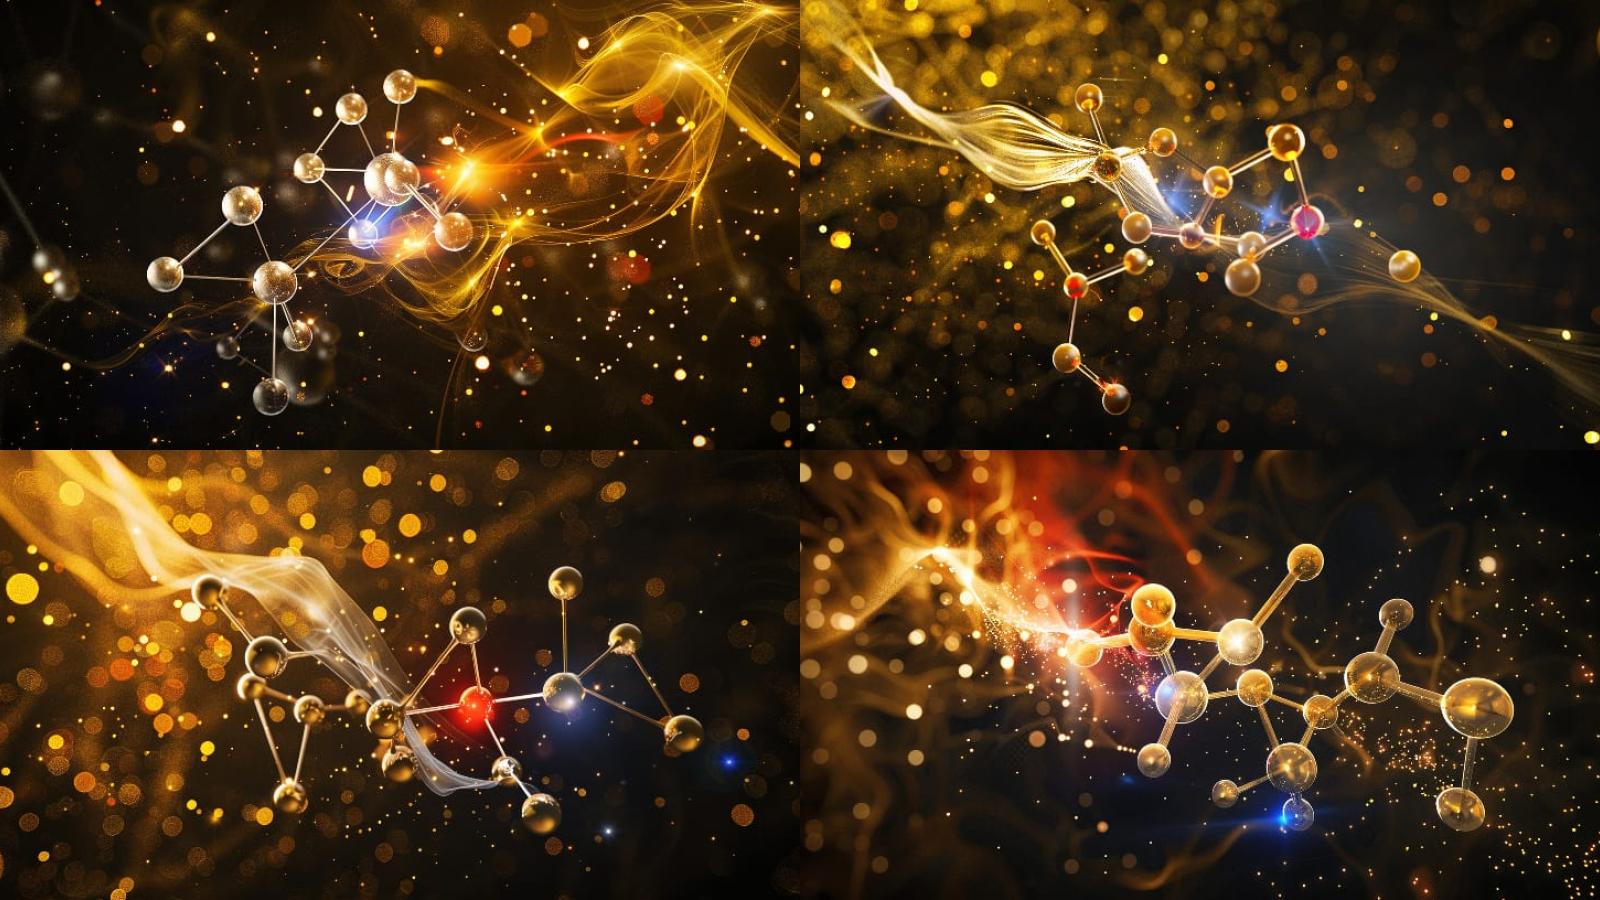 imamgine di molecole oro cons fondo nero